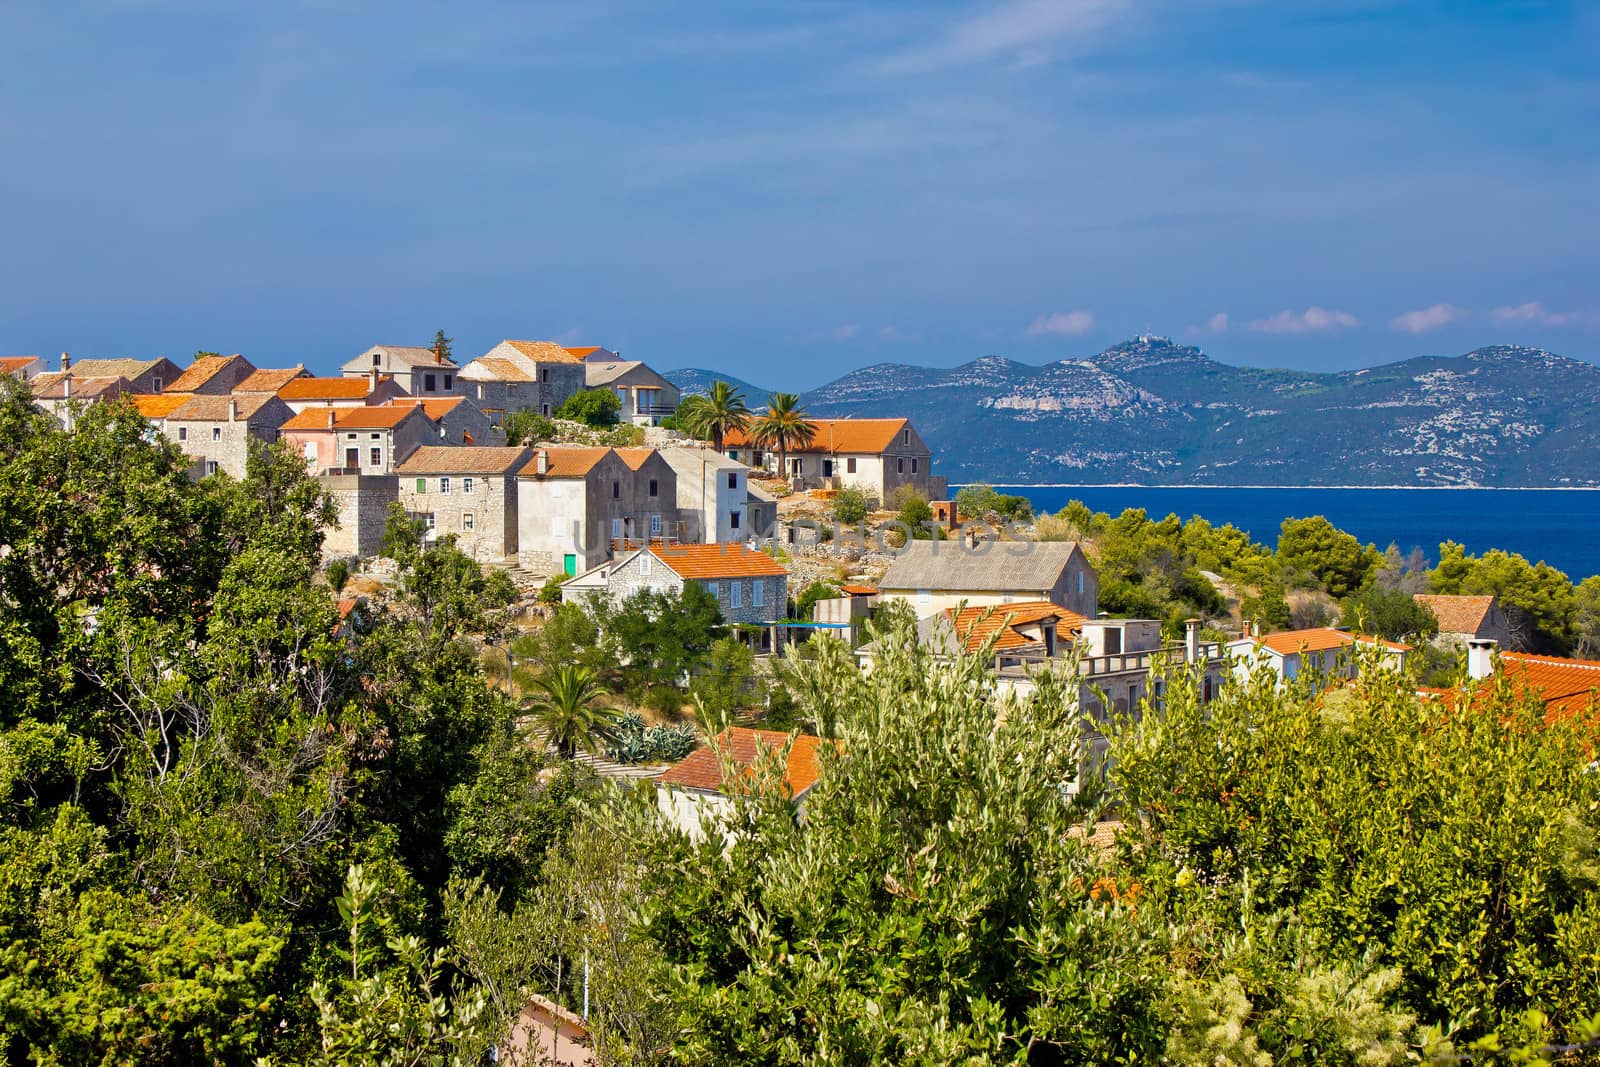 Adriatic Island of Iz village by xbrchx